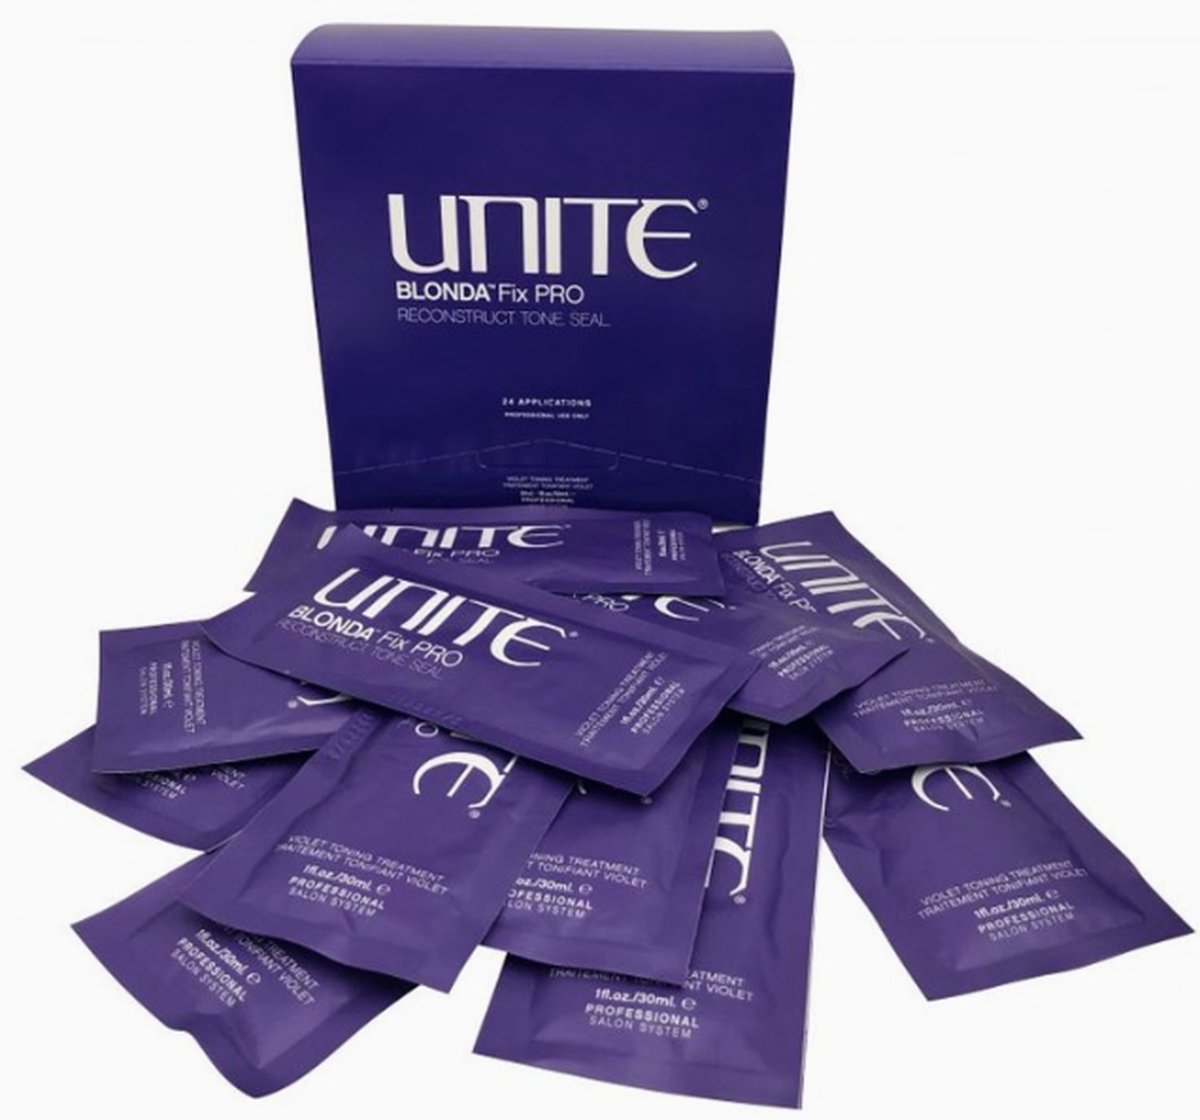 Unite Crème Cleanse & Condition Blonda Fix PRO Violet Toning Treatment